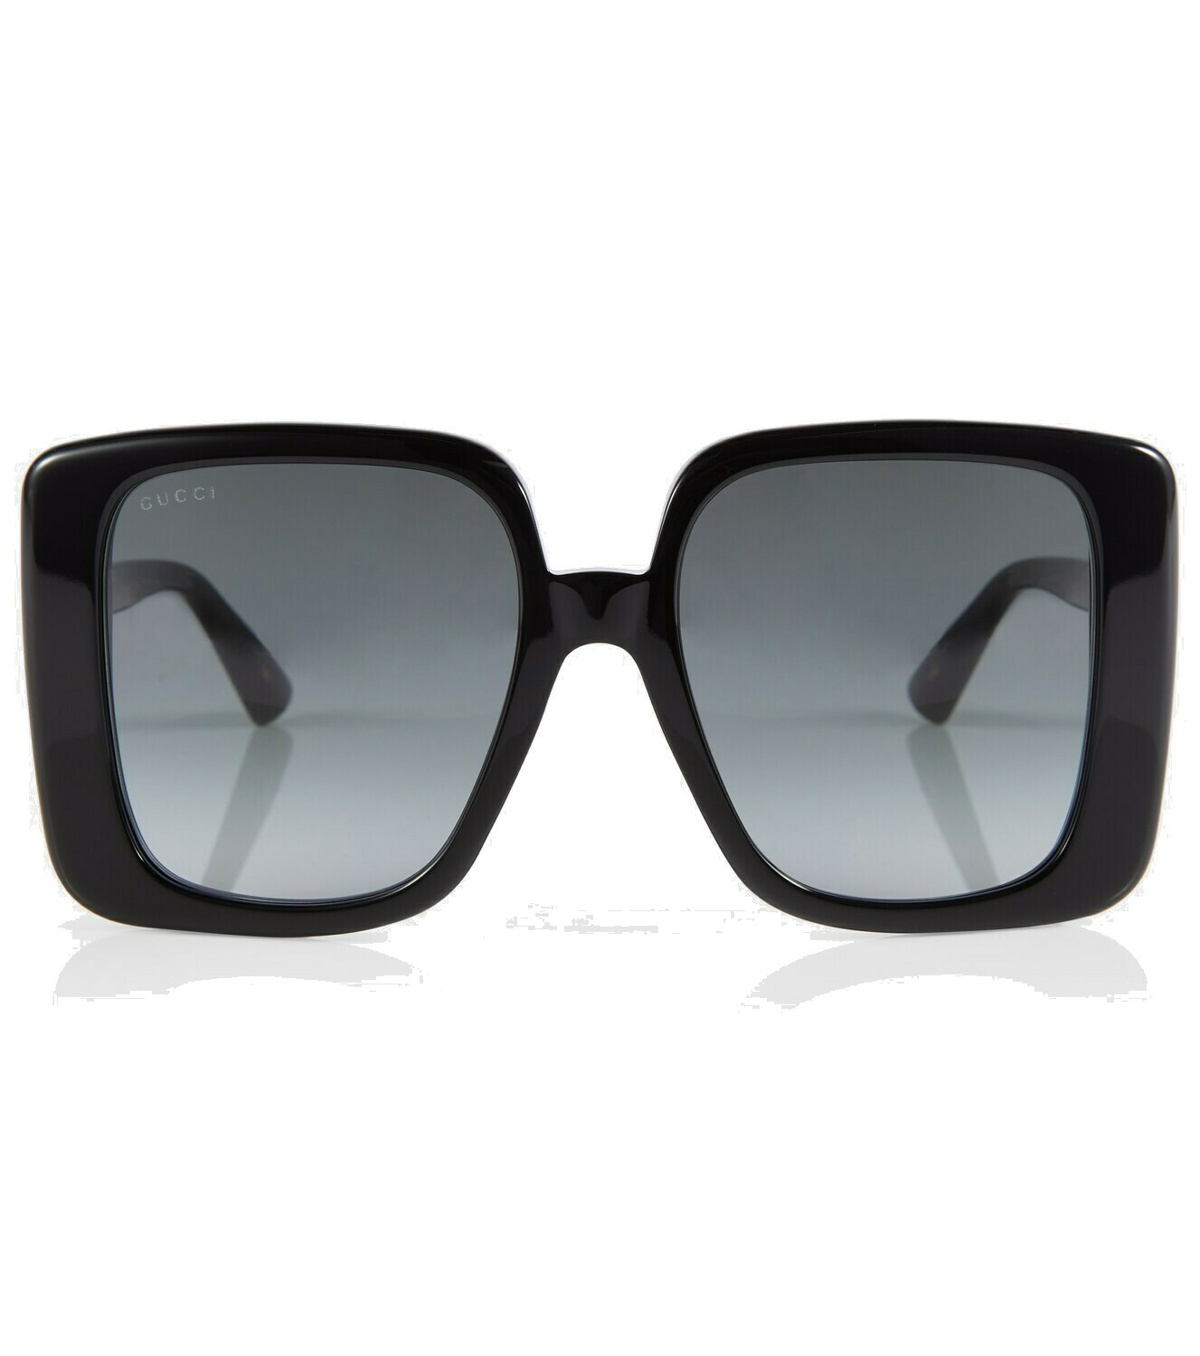 Gucci - Oversized square sunglasses Gucci